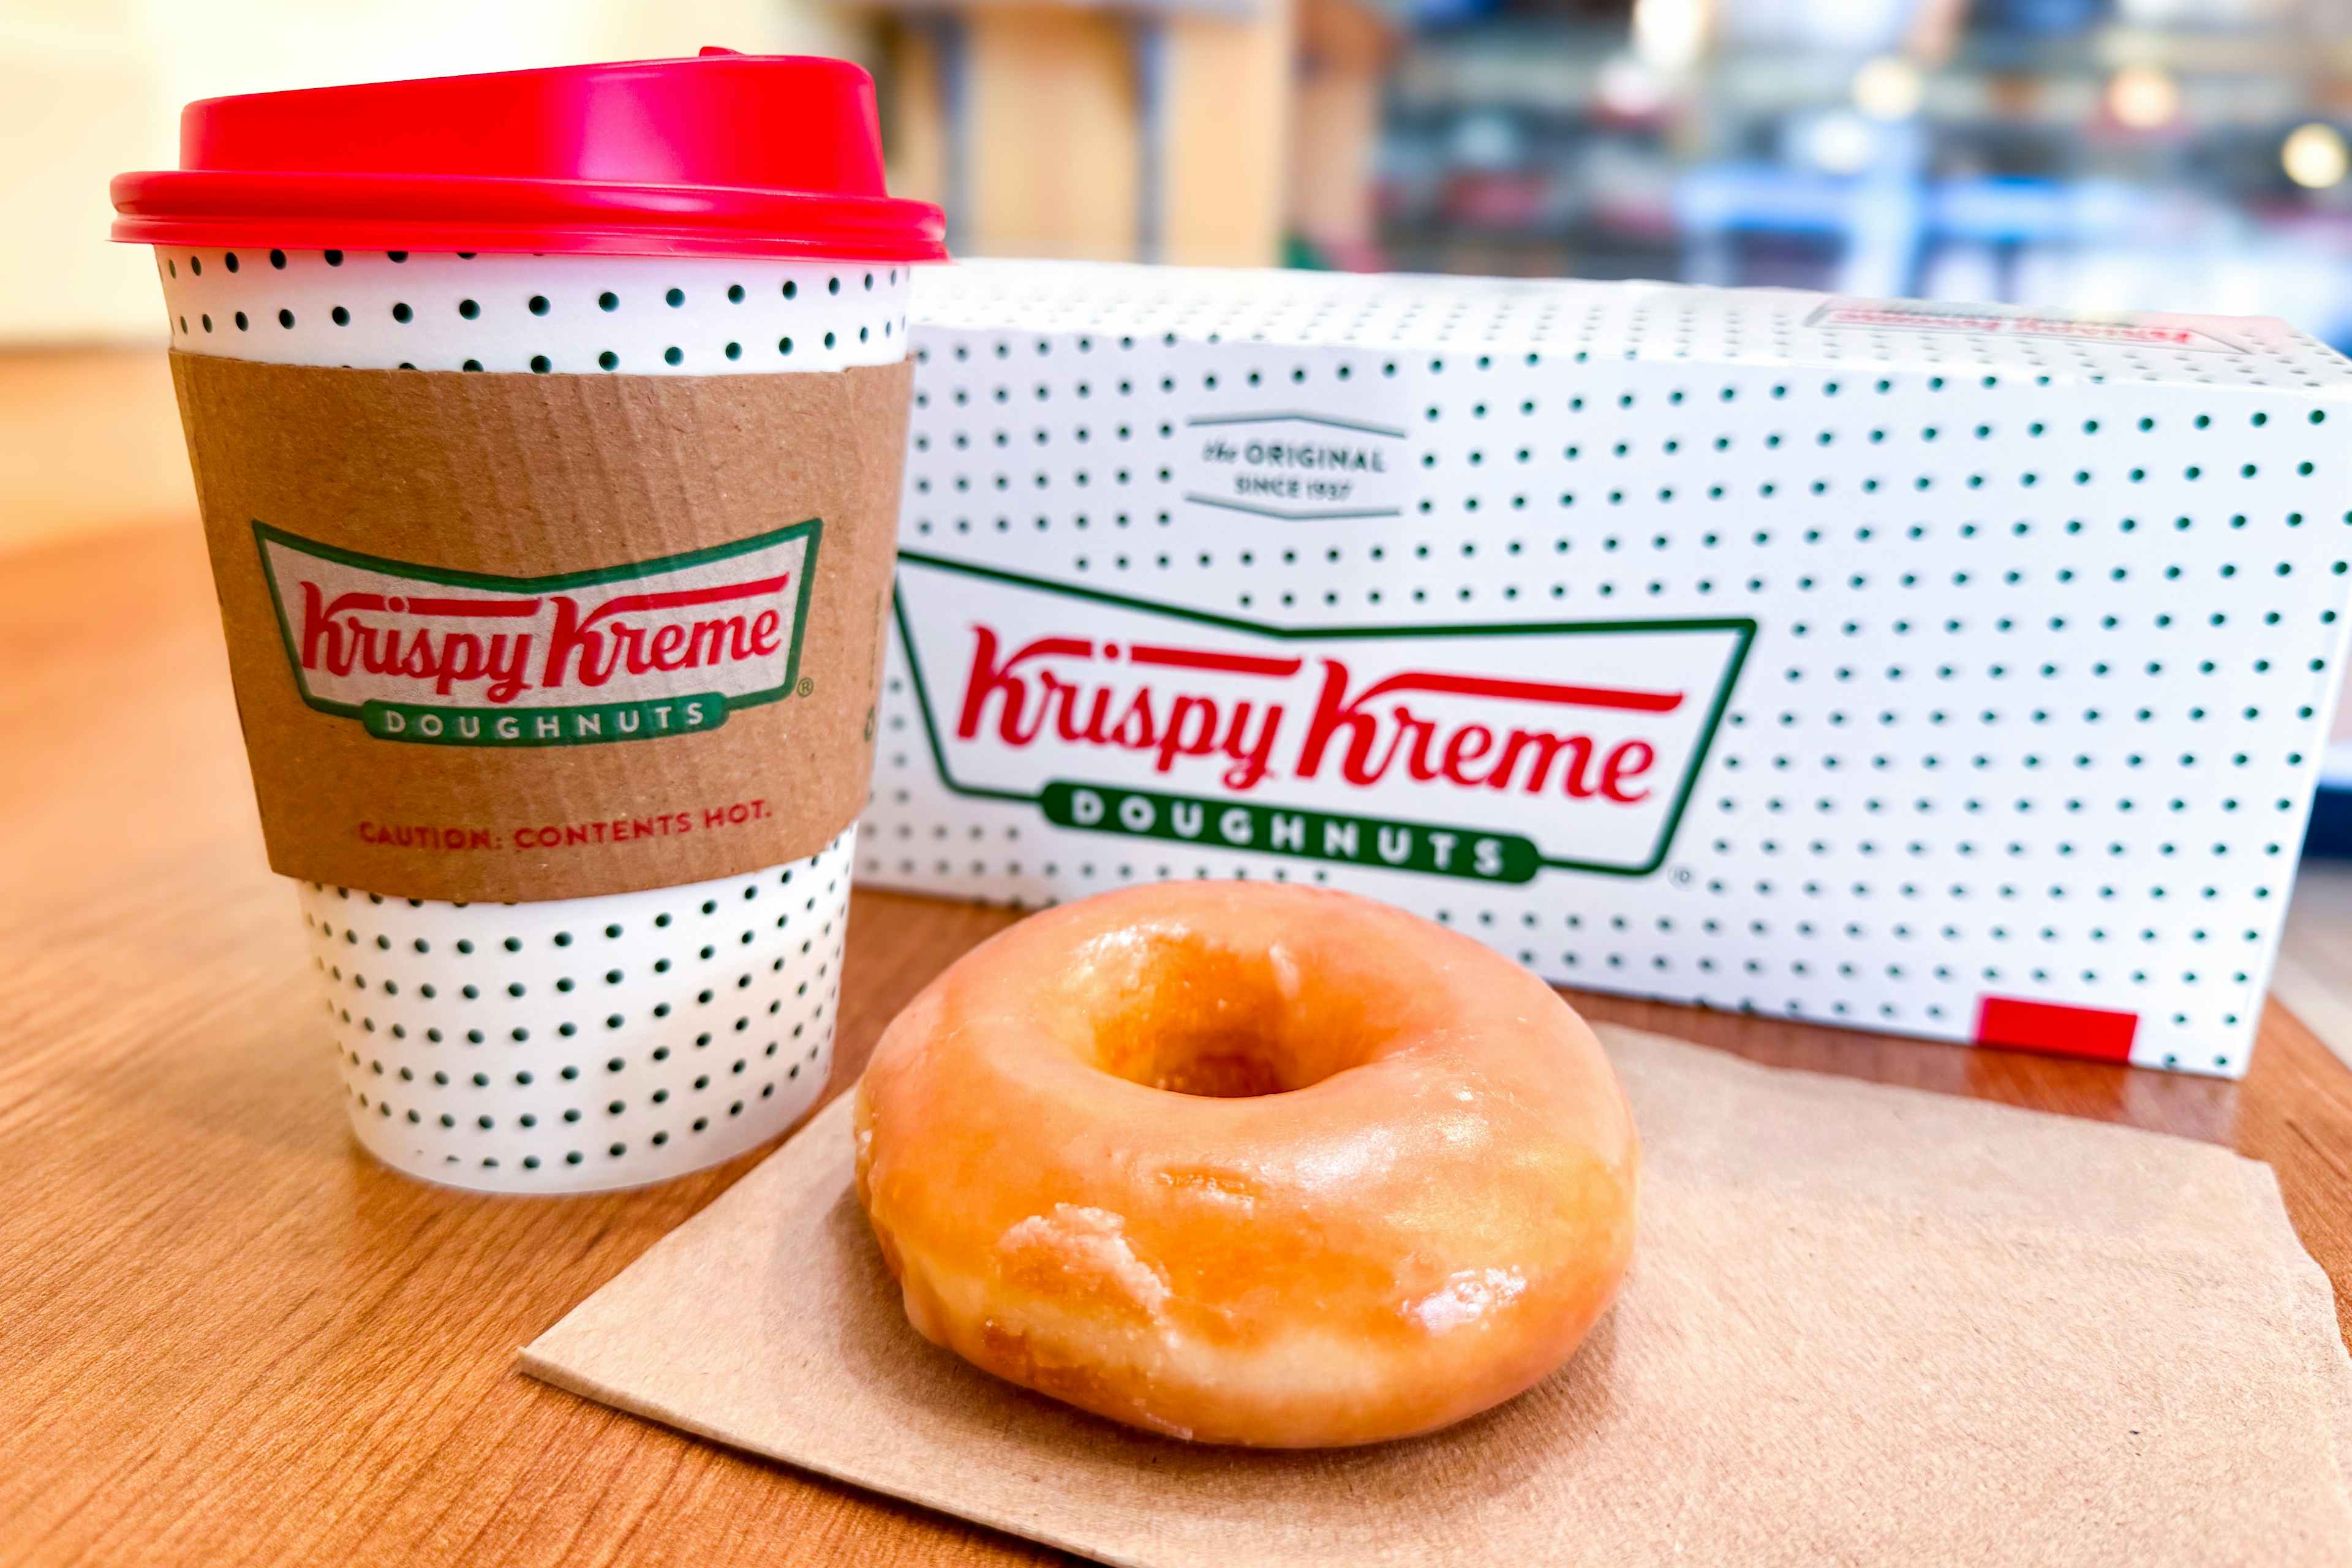 Krispy-kreme-glazed donut-small-coffee-kcl